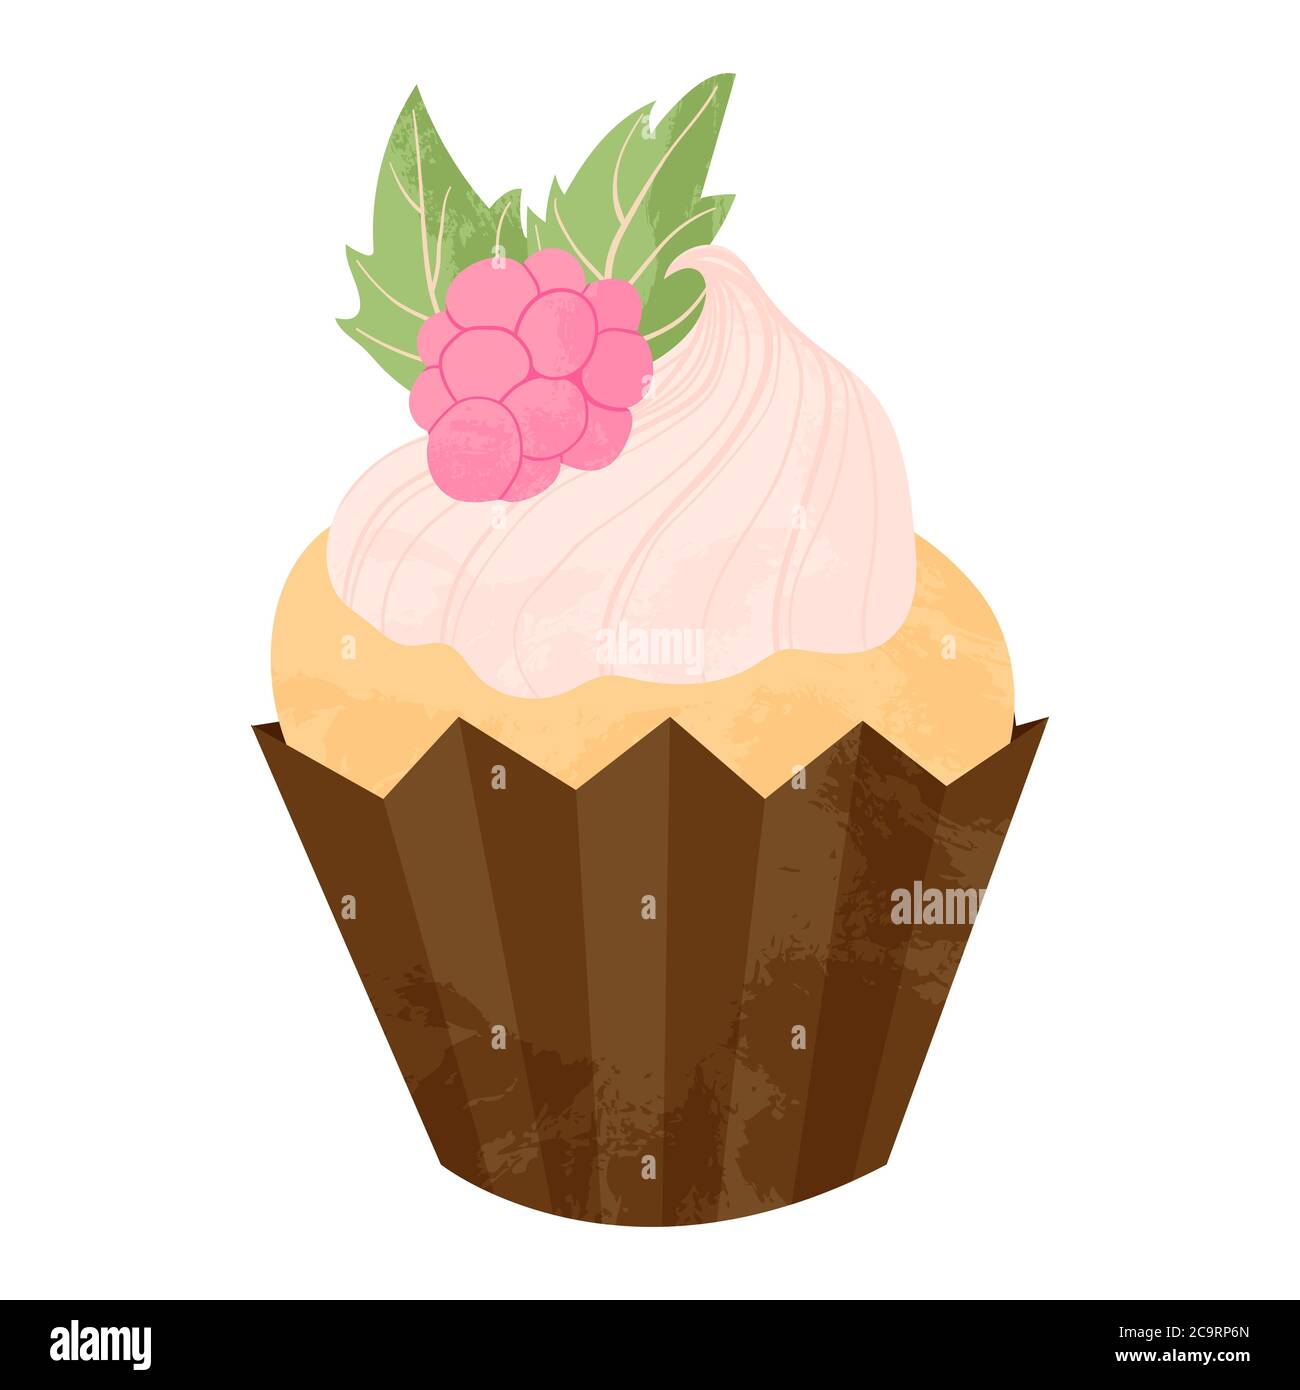 Einhandgezogener Cupcake oder Muffin mit Himbeere und Schlagsahne. Vektor-Cartoon-Illustration in flachem Design. Element für Grußkarten, Plakate, Stock Vektor